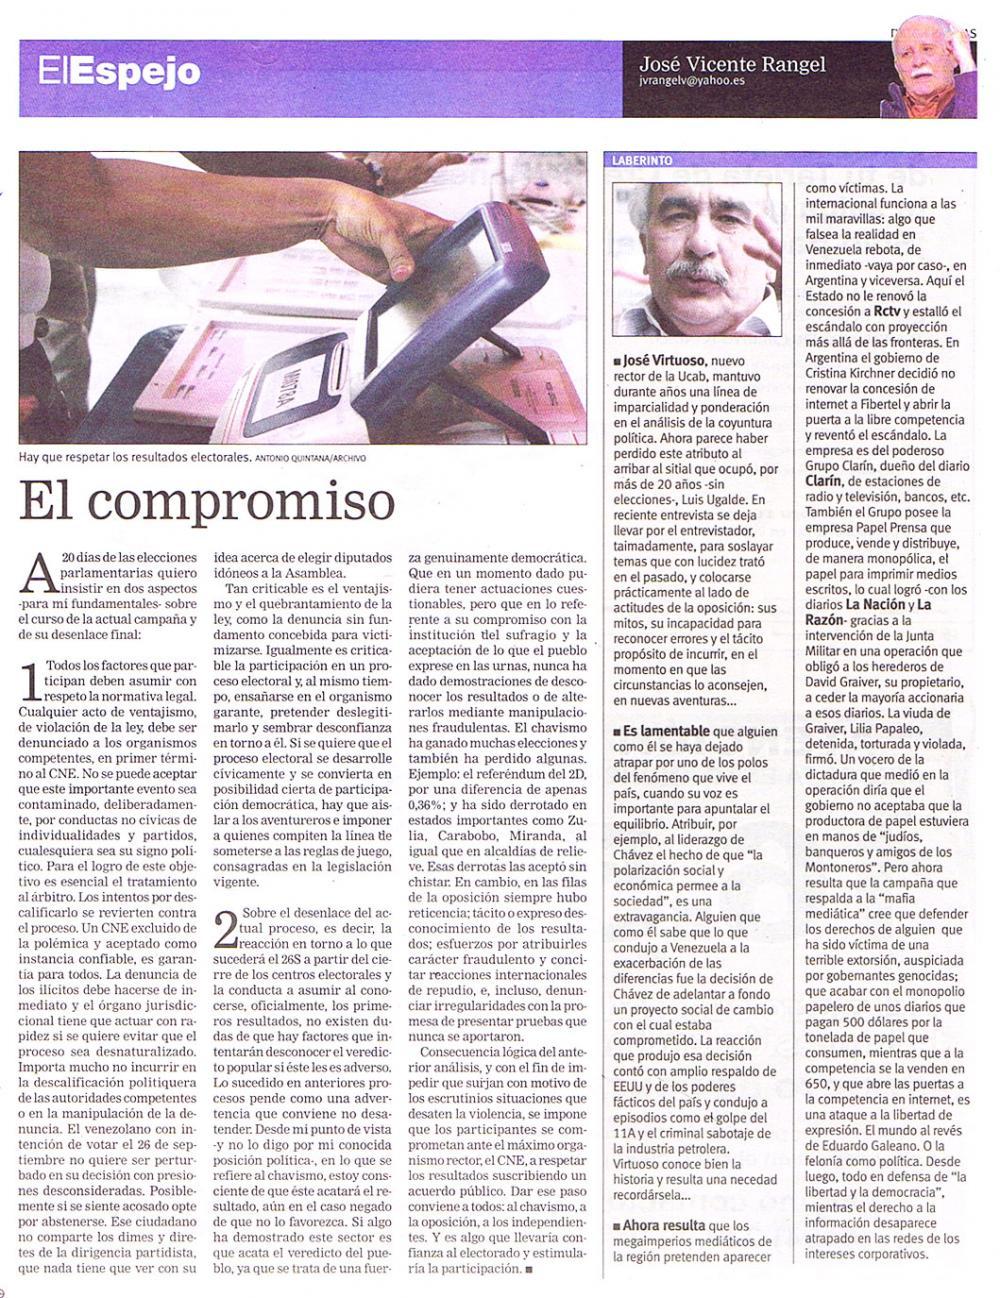 El Espejo-José Vicente Rangel / El compromiso